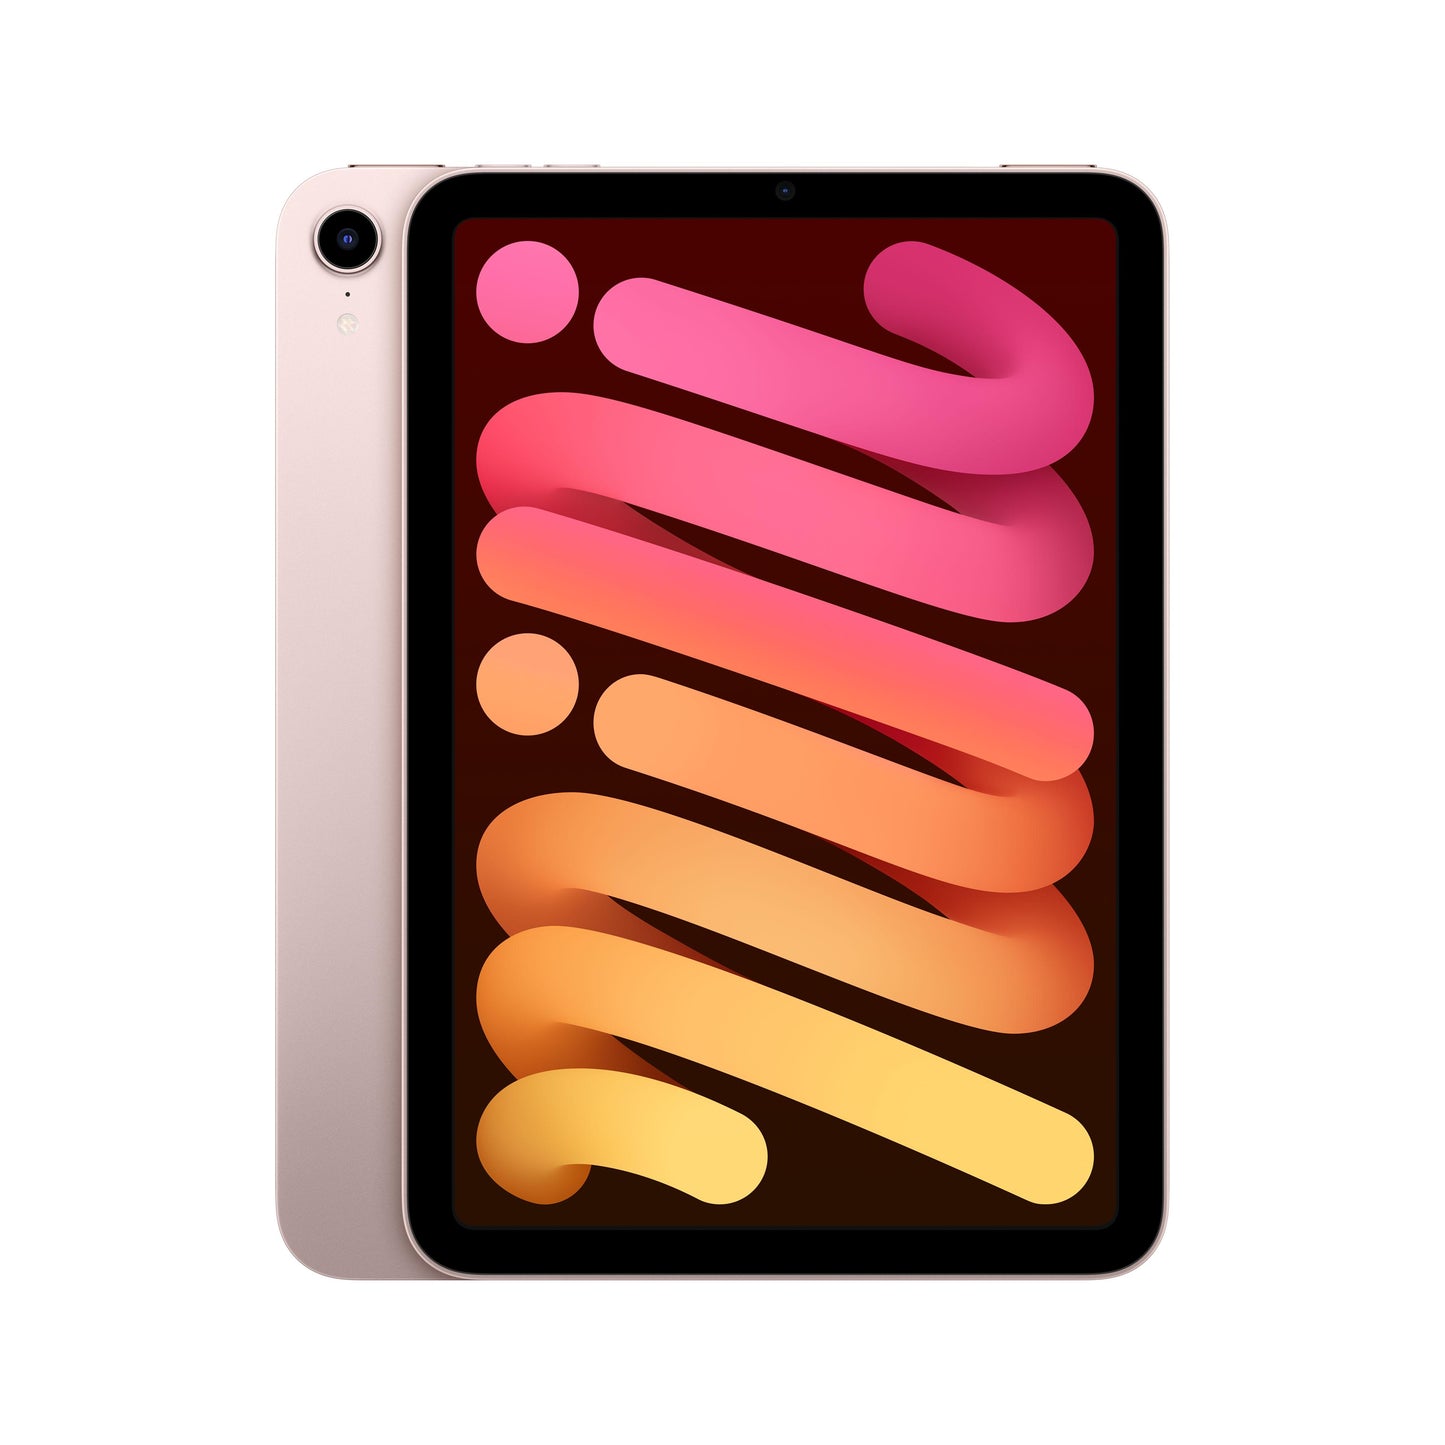 2021 iPad mini Wi-Fi + Cellular 64GB - Pink (6th generation)